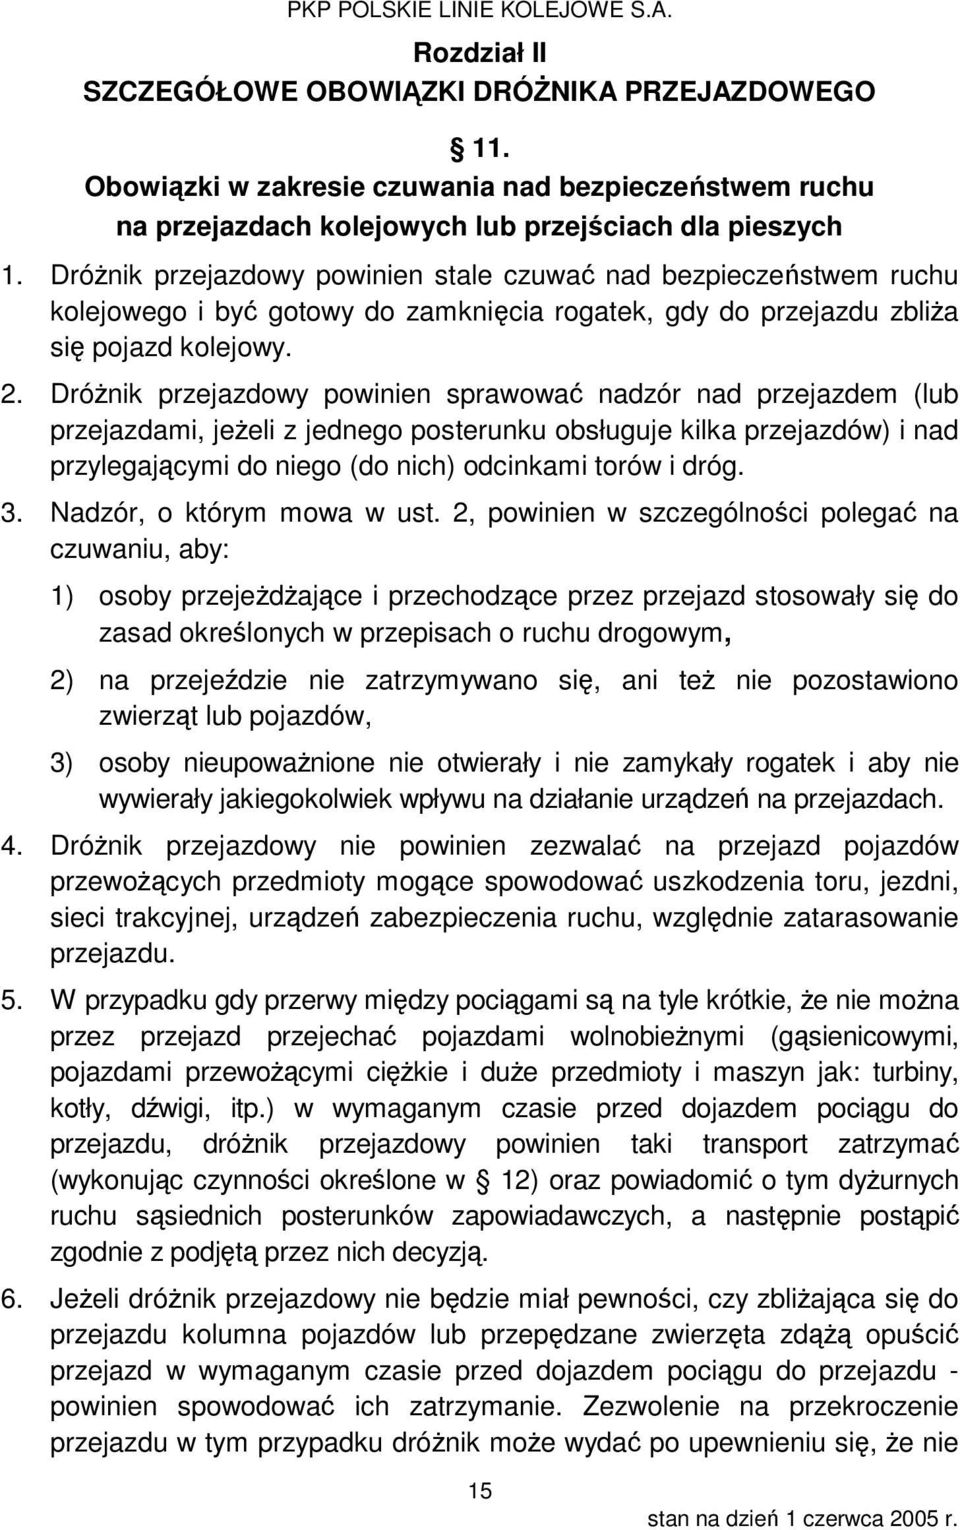 Instrukcja obsługi przejazdów kolejowych. Ir-7 (R-20) - PDF Darmowe  pobieranie